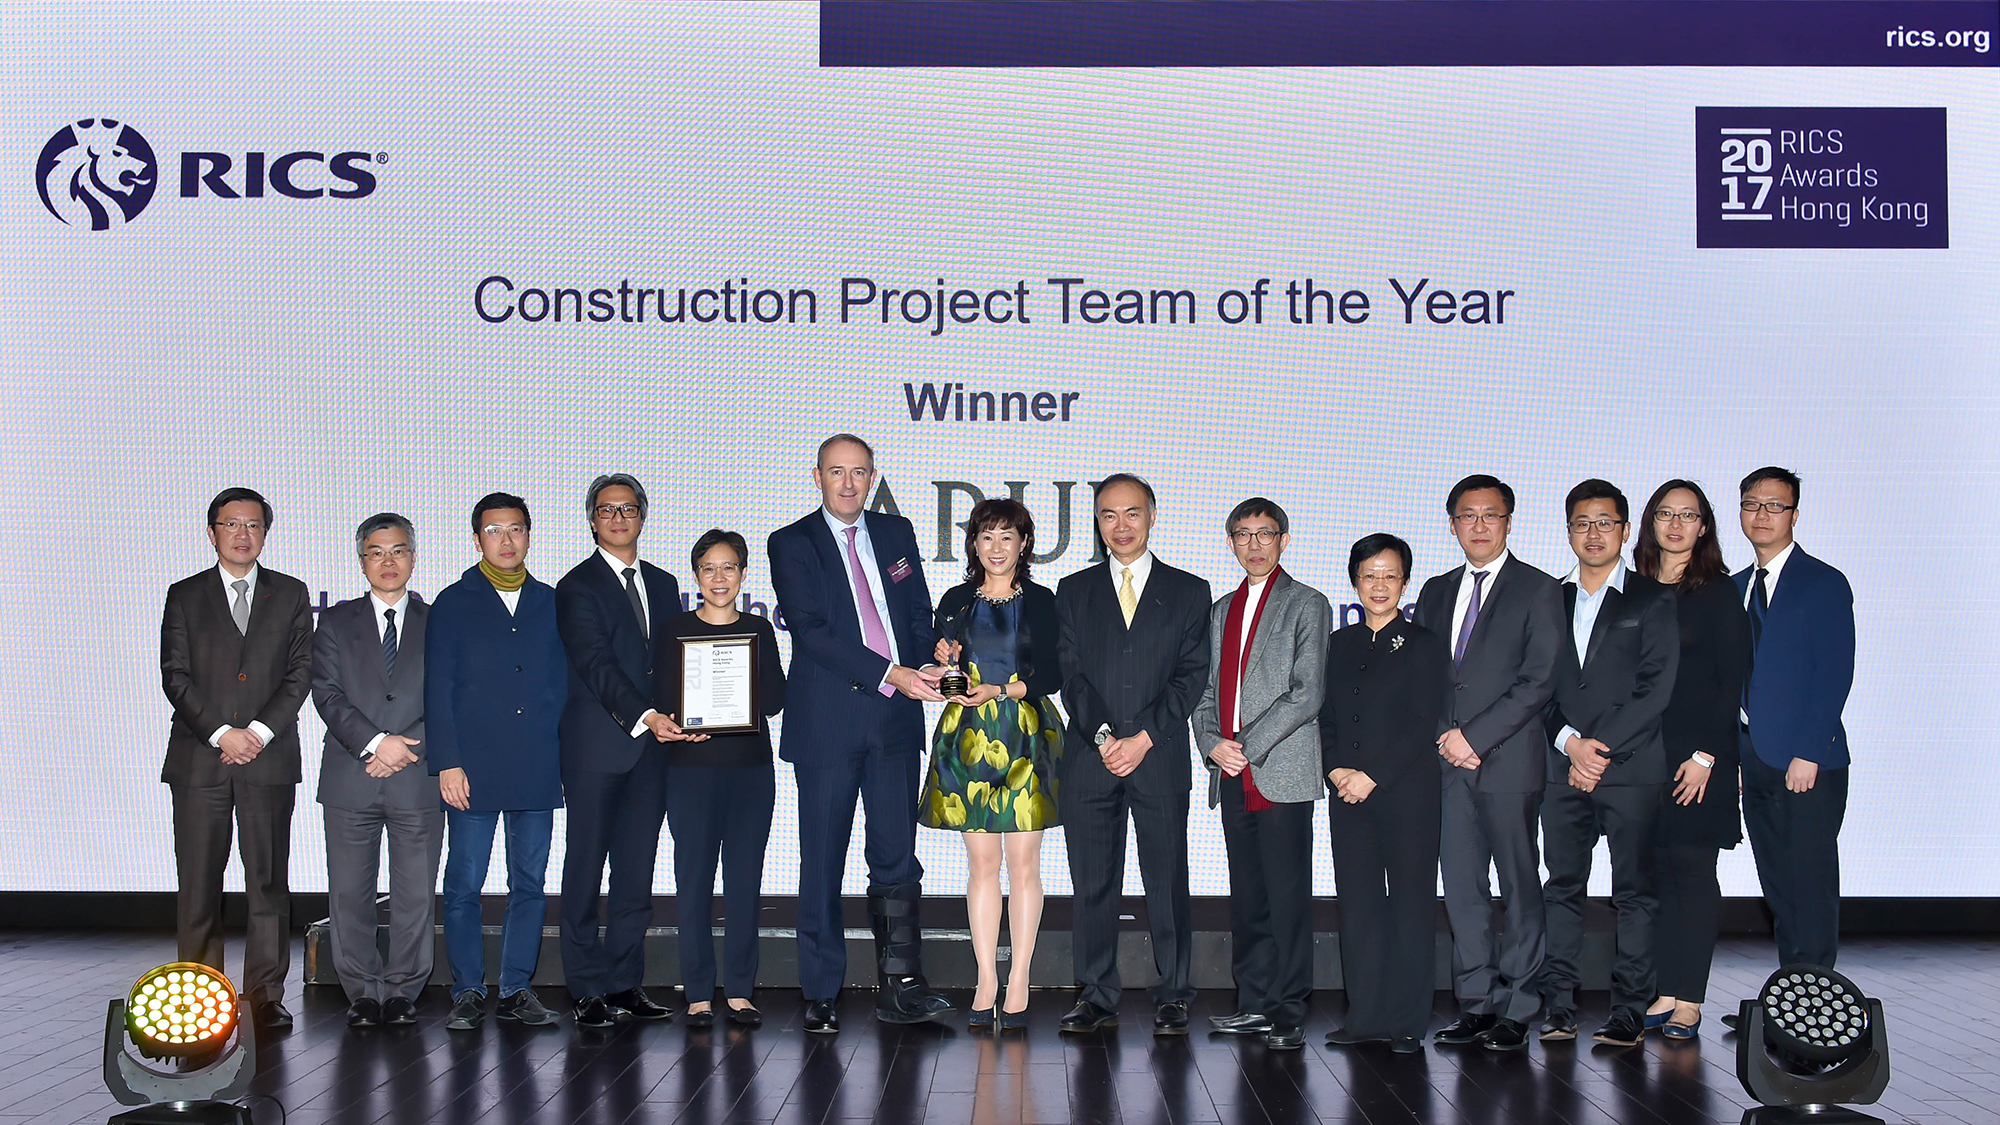  Construction Project Team of the Year at the RICS Awards Hong Kong 2017 - Chu Hai College new campus (c) RICS